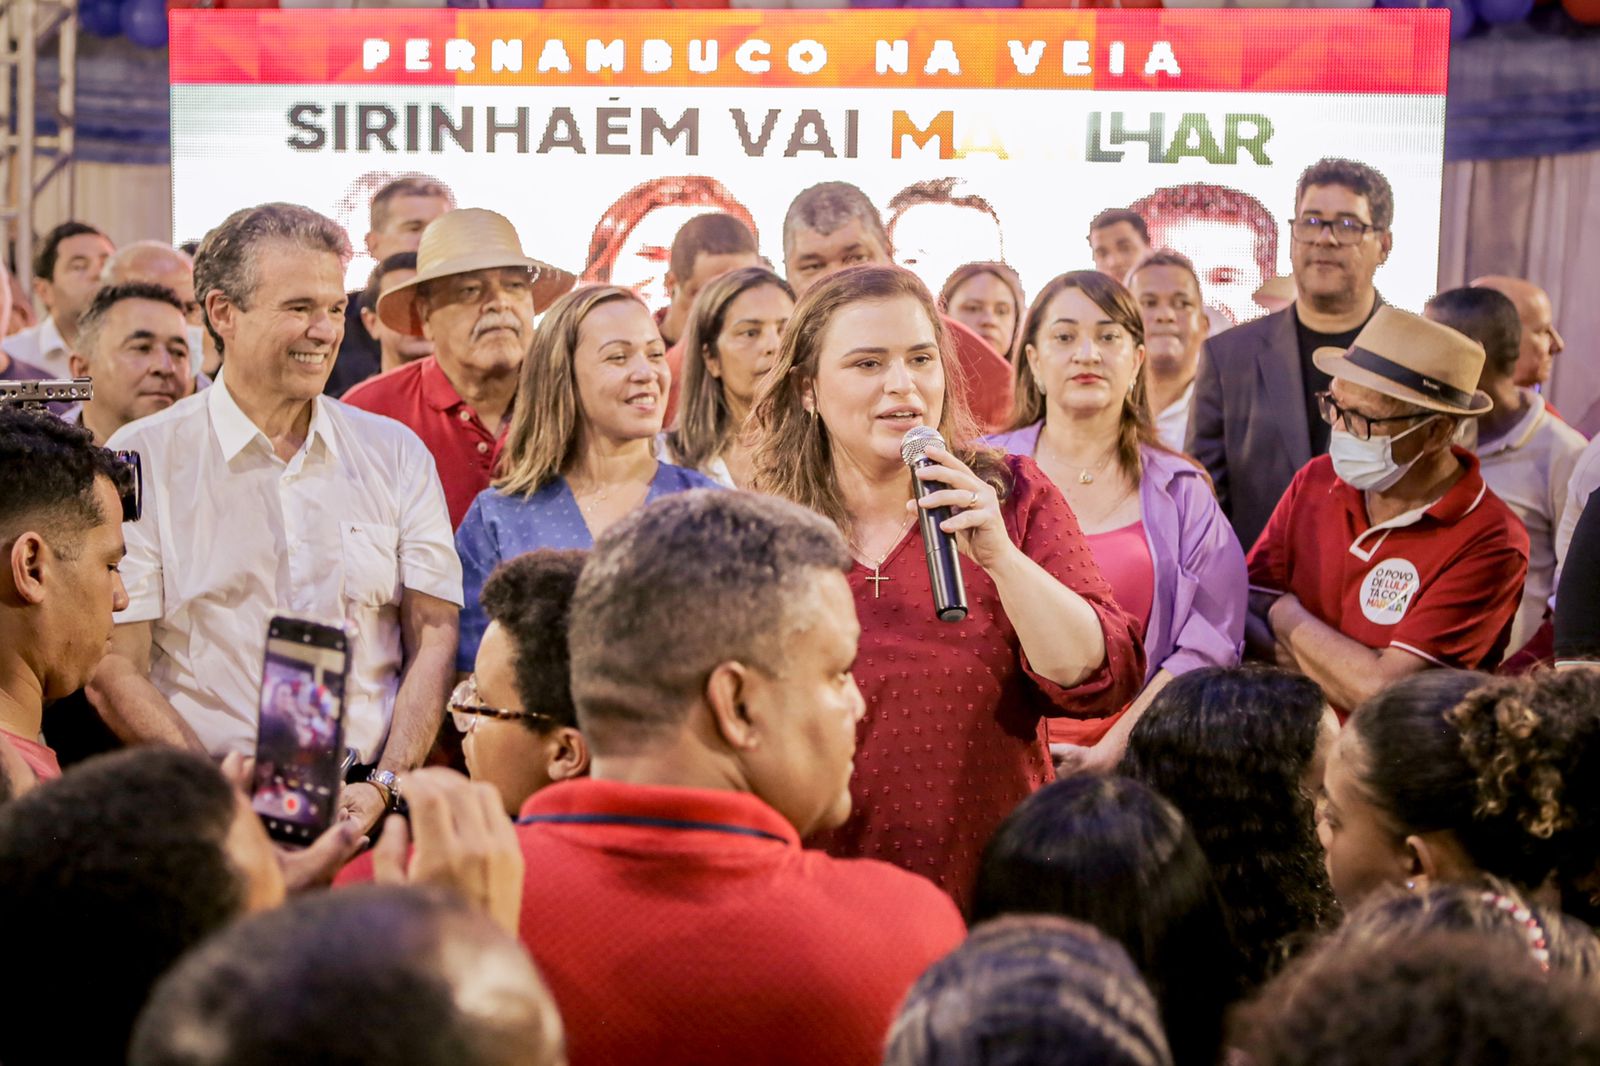 Marília Arraes participa de histórico ato no STR de Sirinhaém promovido pela prefeita Camila Machado (PP)